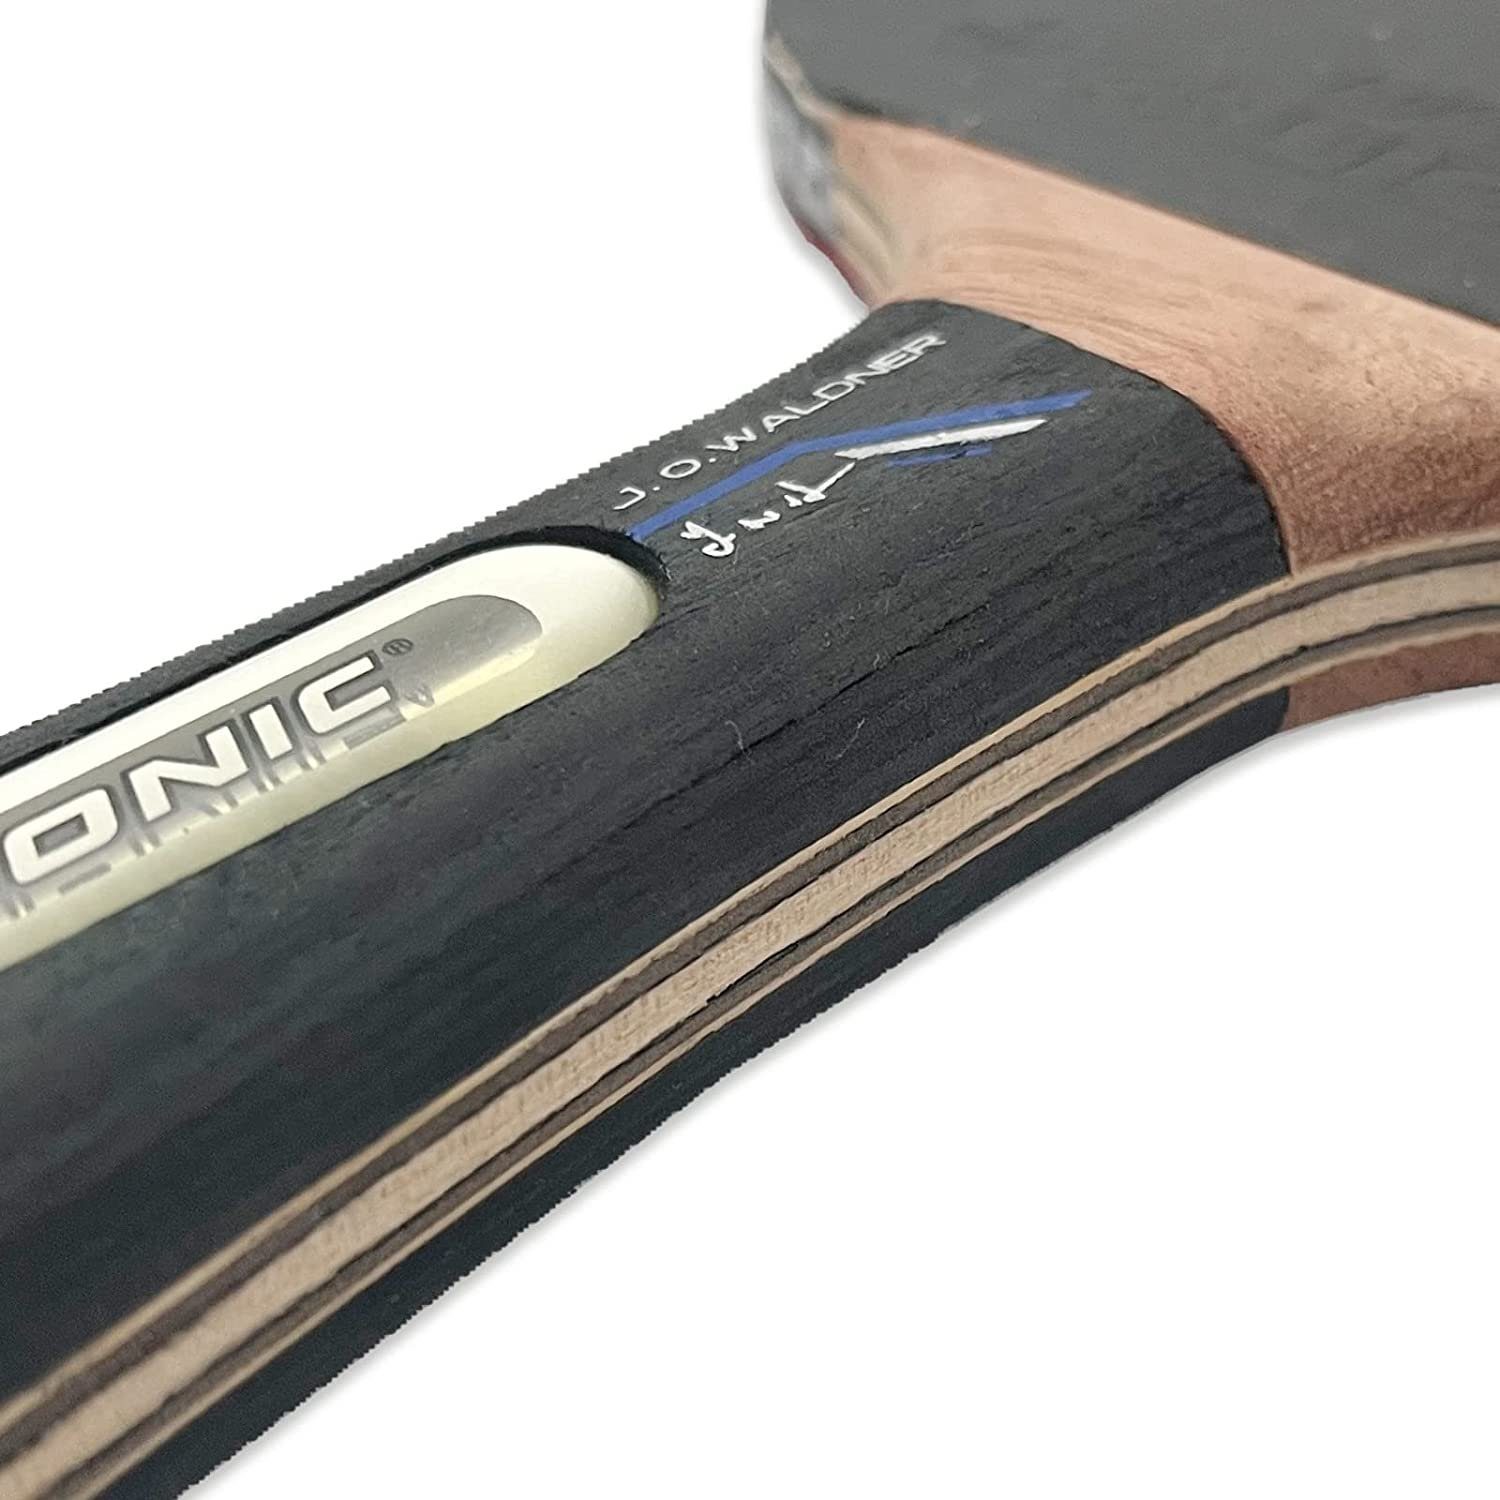 Schläger Tischtennisschläger Racket Waldner Bat Tennis 3000, Donic-Schildkröt Table Tischtennis